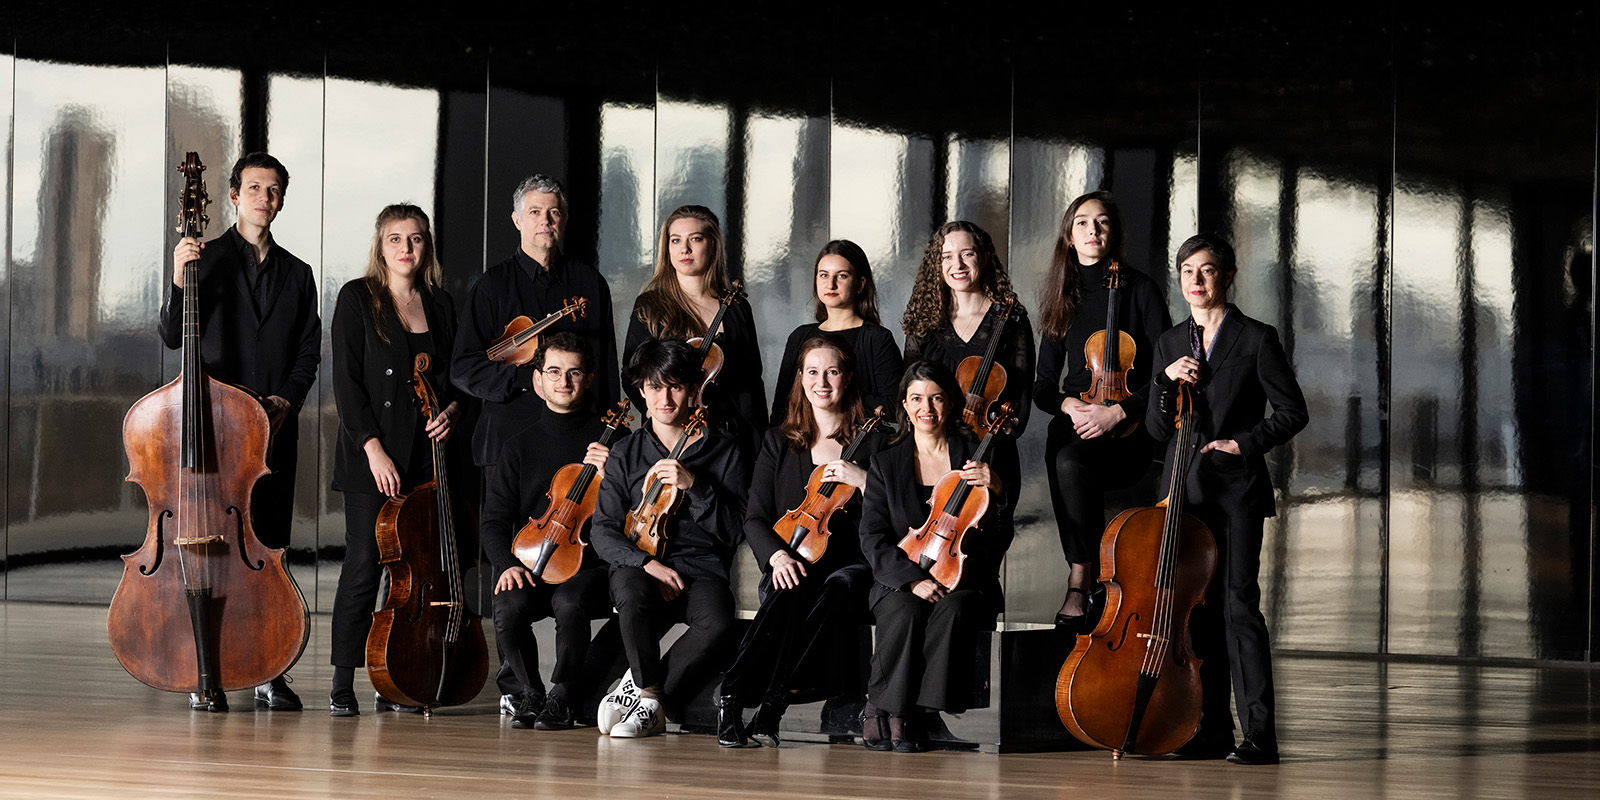 Les Arts Florissants Théotime Langlois de Swarte, Baroque violin Vivaldi’s Four Seasons at 300